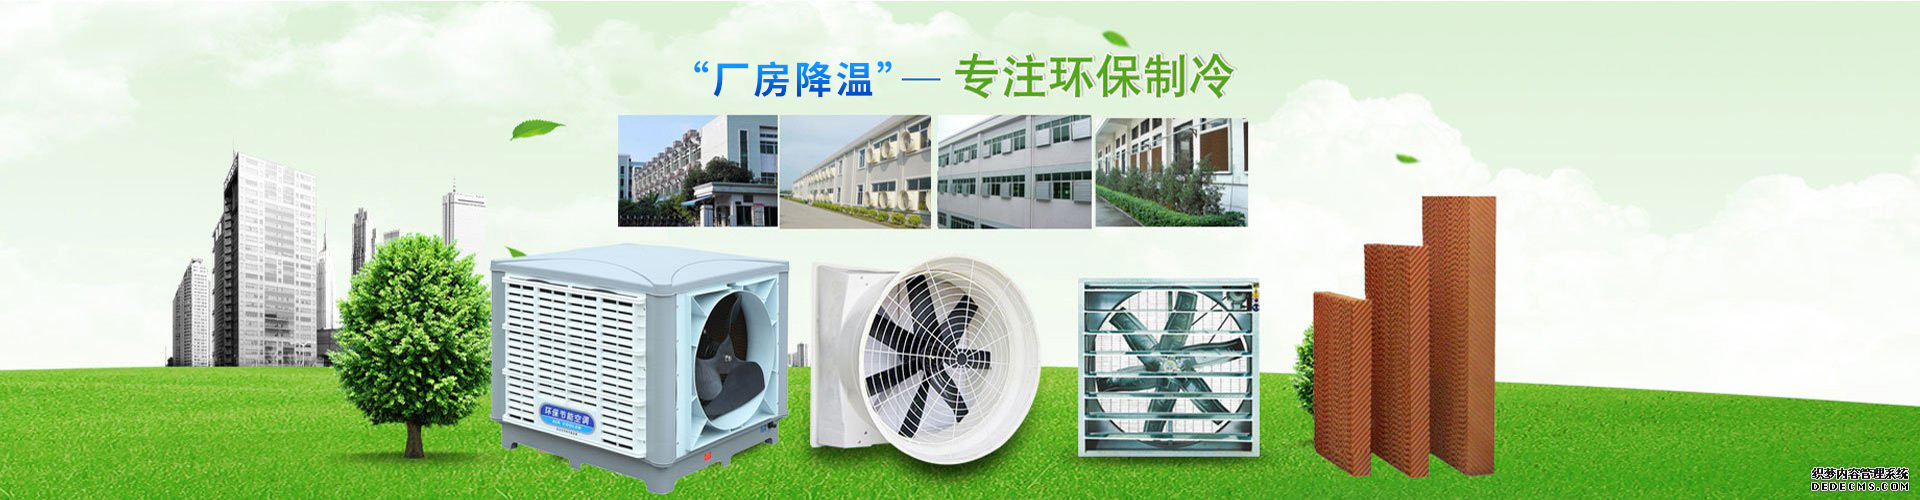 南平市浦城县环保水冷空调供应商 通风管道 欢迎咨询